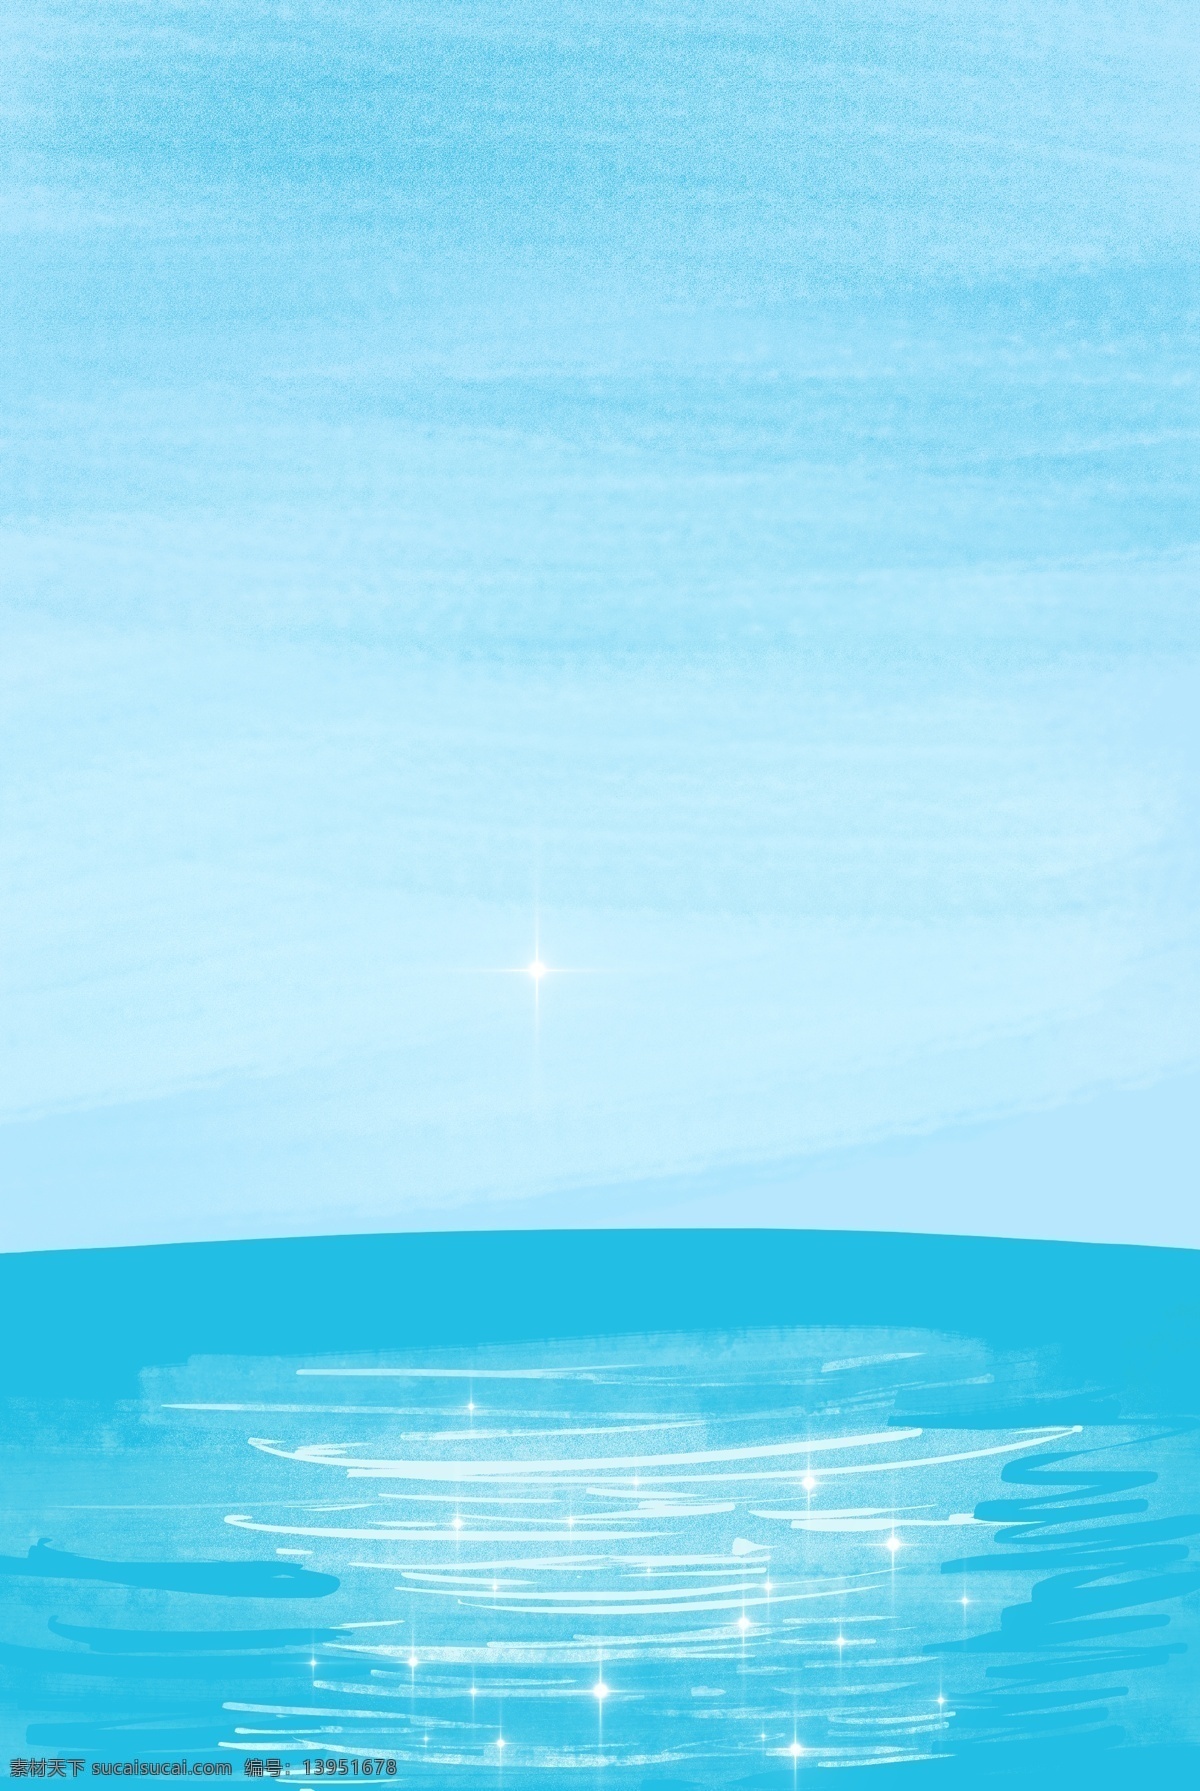 蓝色 水塘 天空 背景 蓝色调 夏天 夏季 白云 水面 插画背景 清新 水边